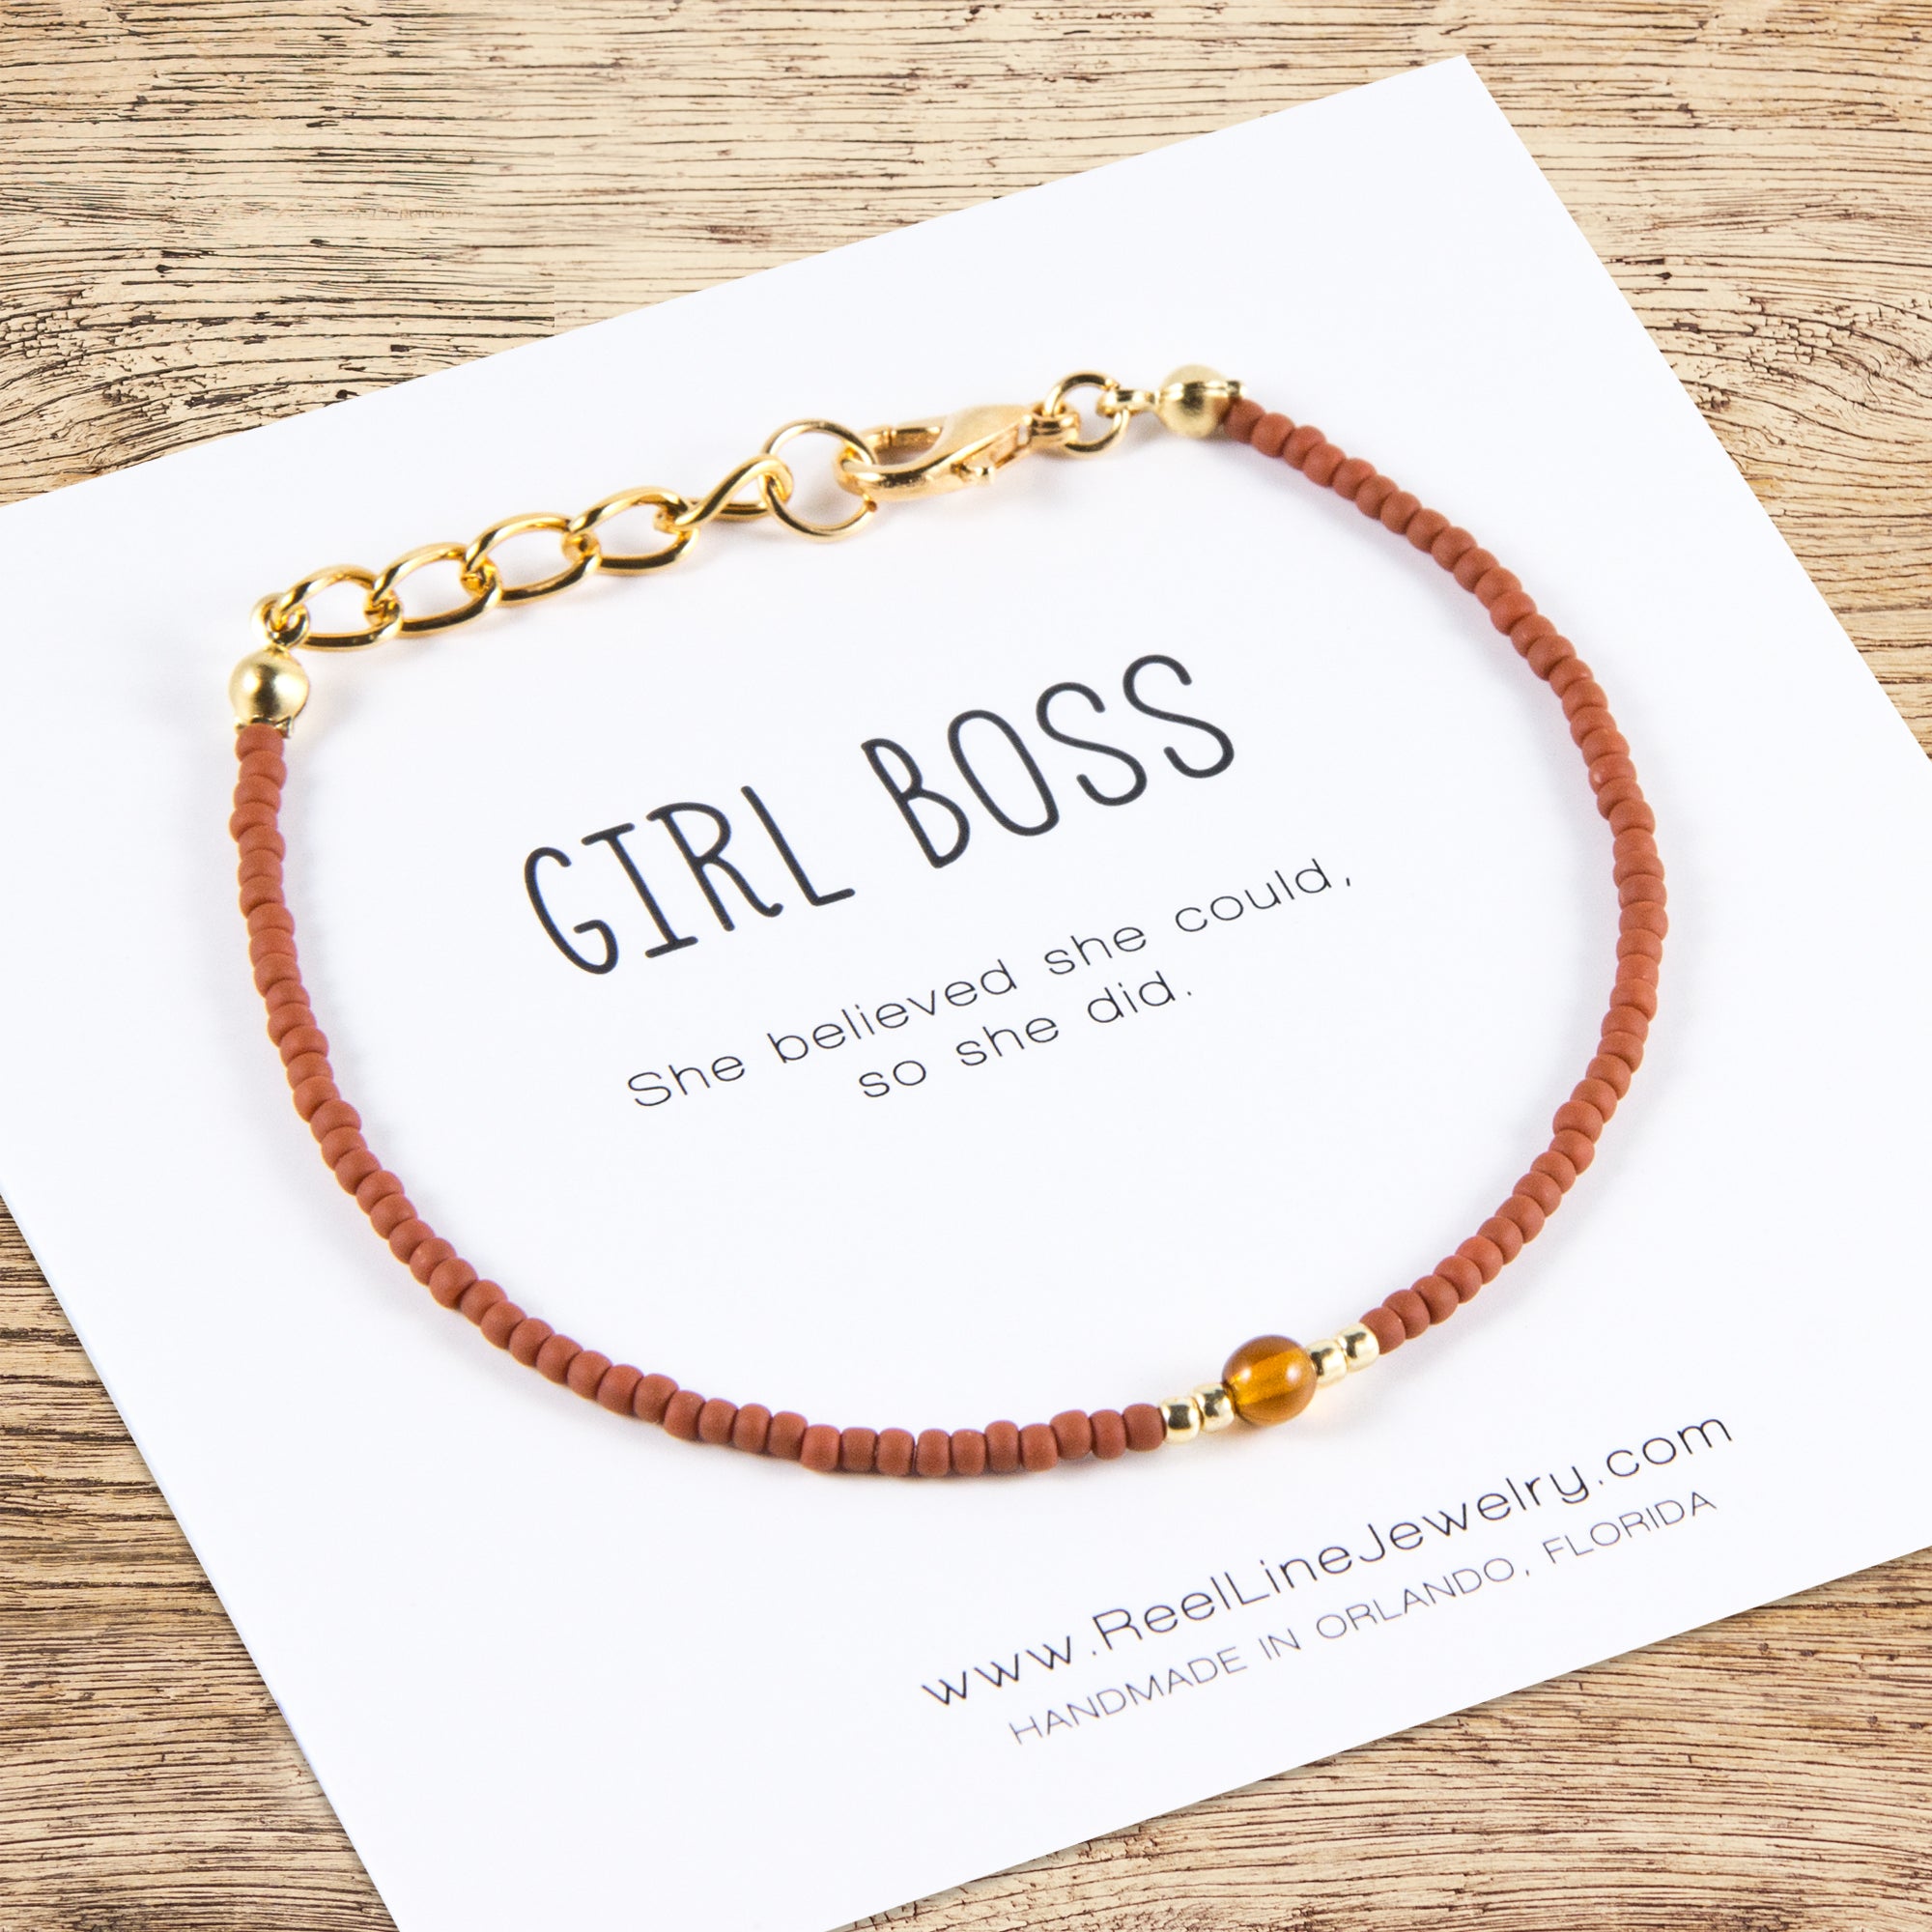 Jewel Girl Boss Bracelet - Inspirational Jewelry